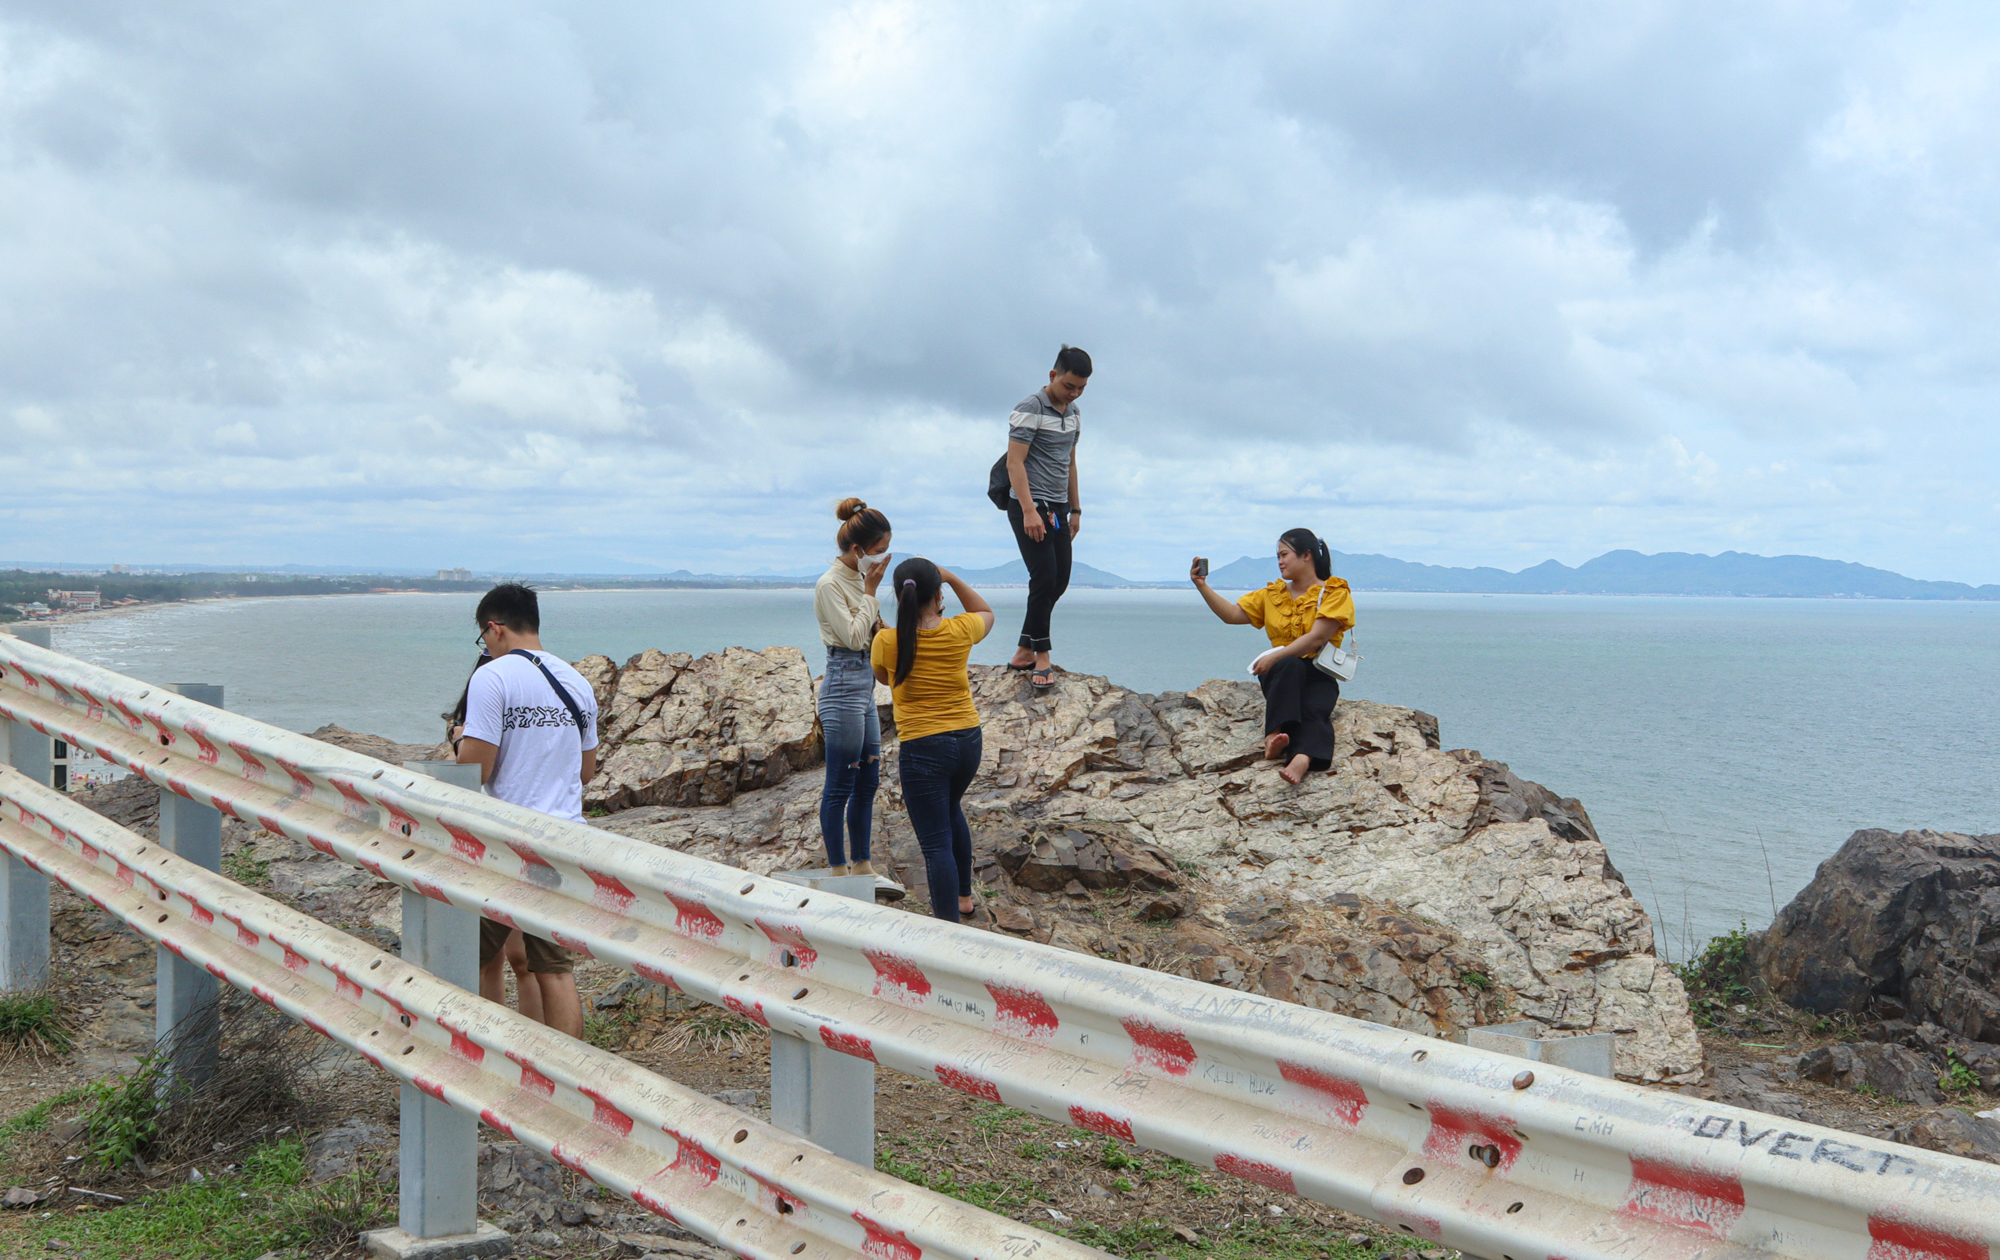  Giới trẻ đua nhau leo núi đá để check-in ảnh độc toàn cảnh Vũng Tàu - Ảnh 4.